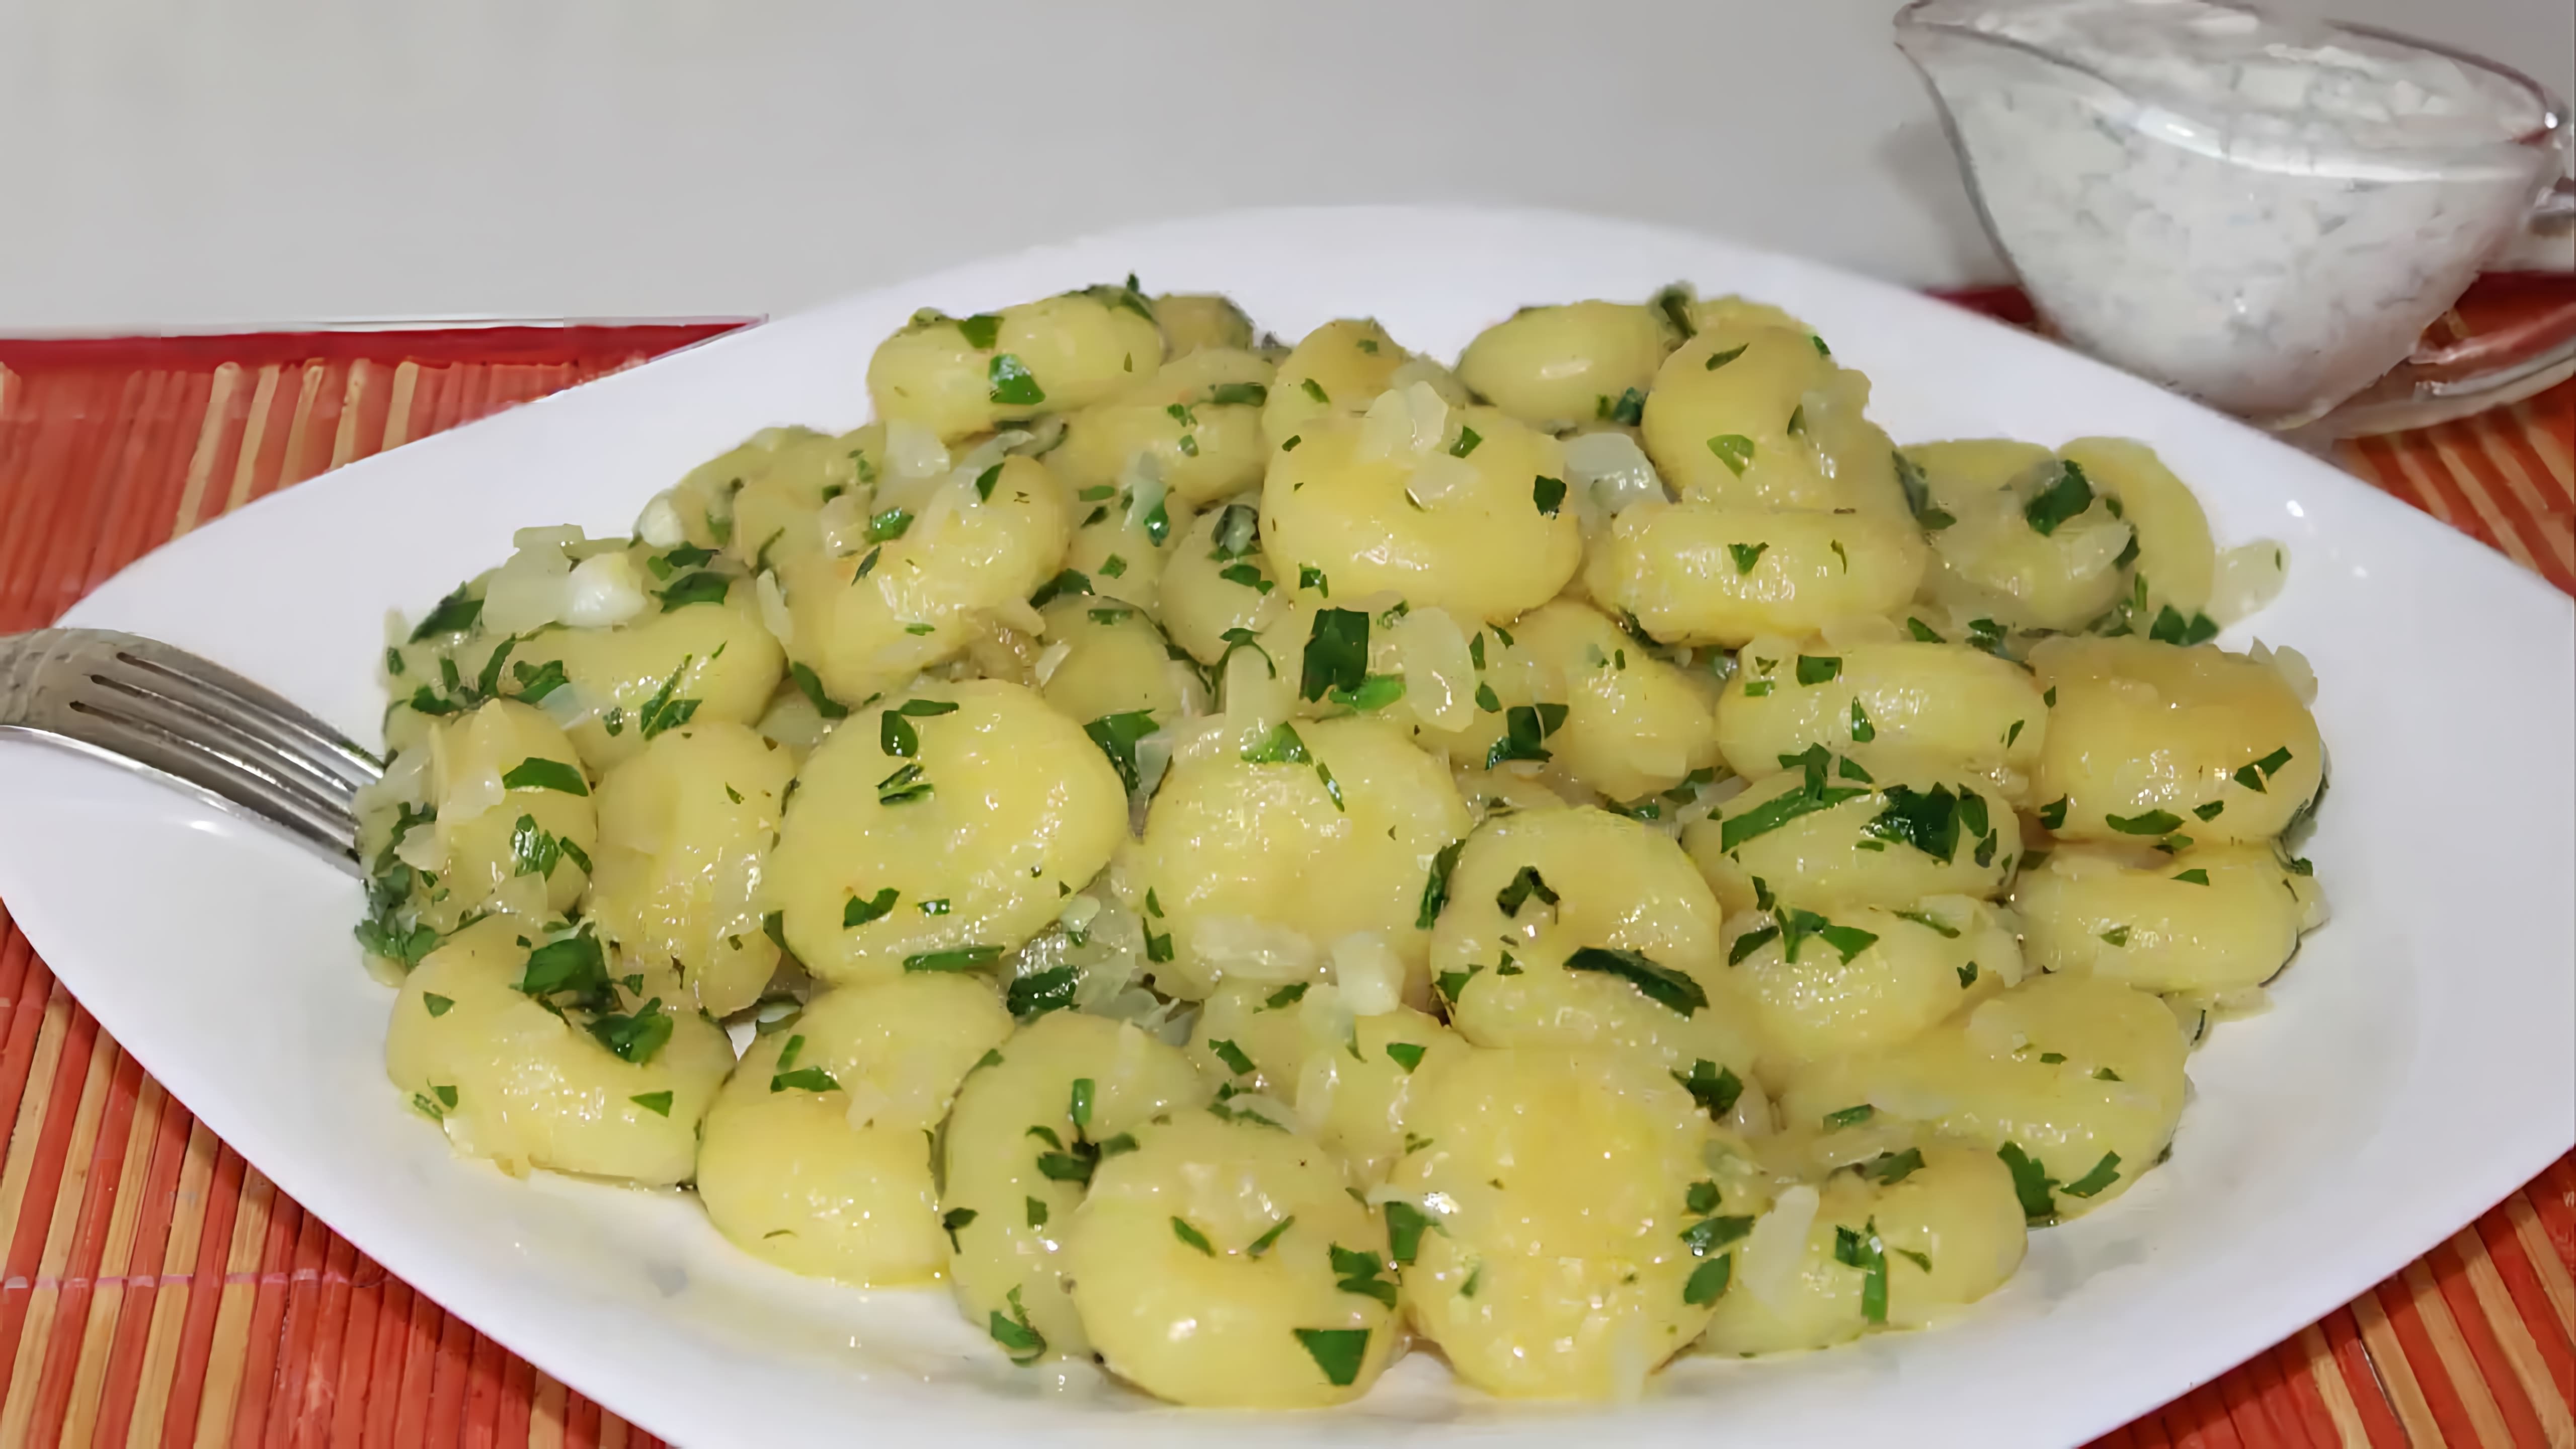 В этом видео Наталья готовит картофельные ньокки, которые также известны как галушки или клецки